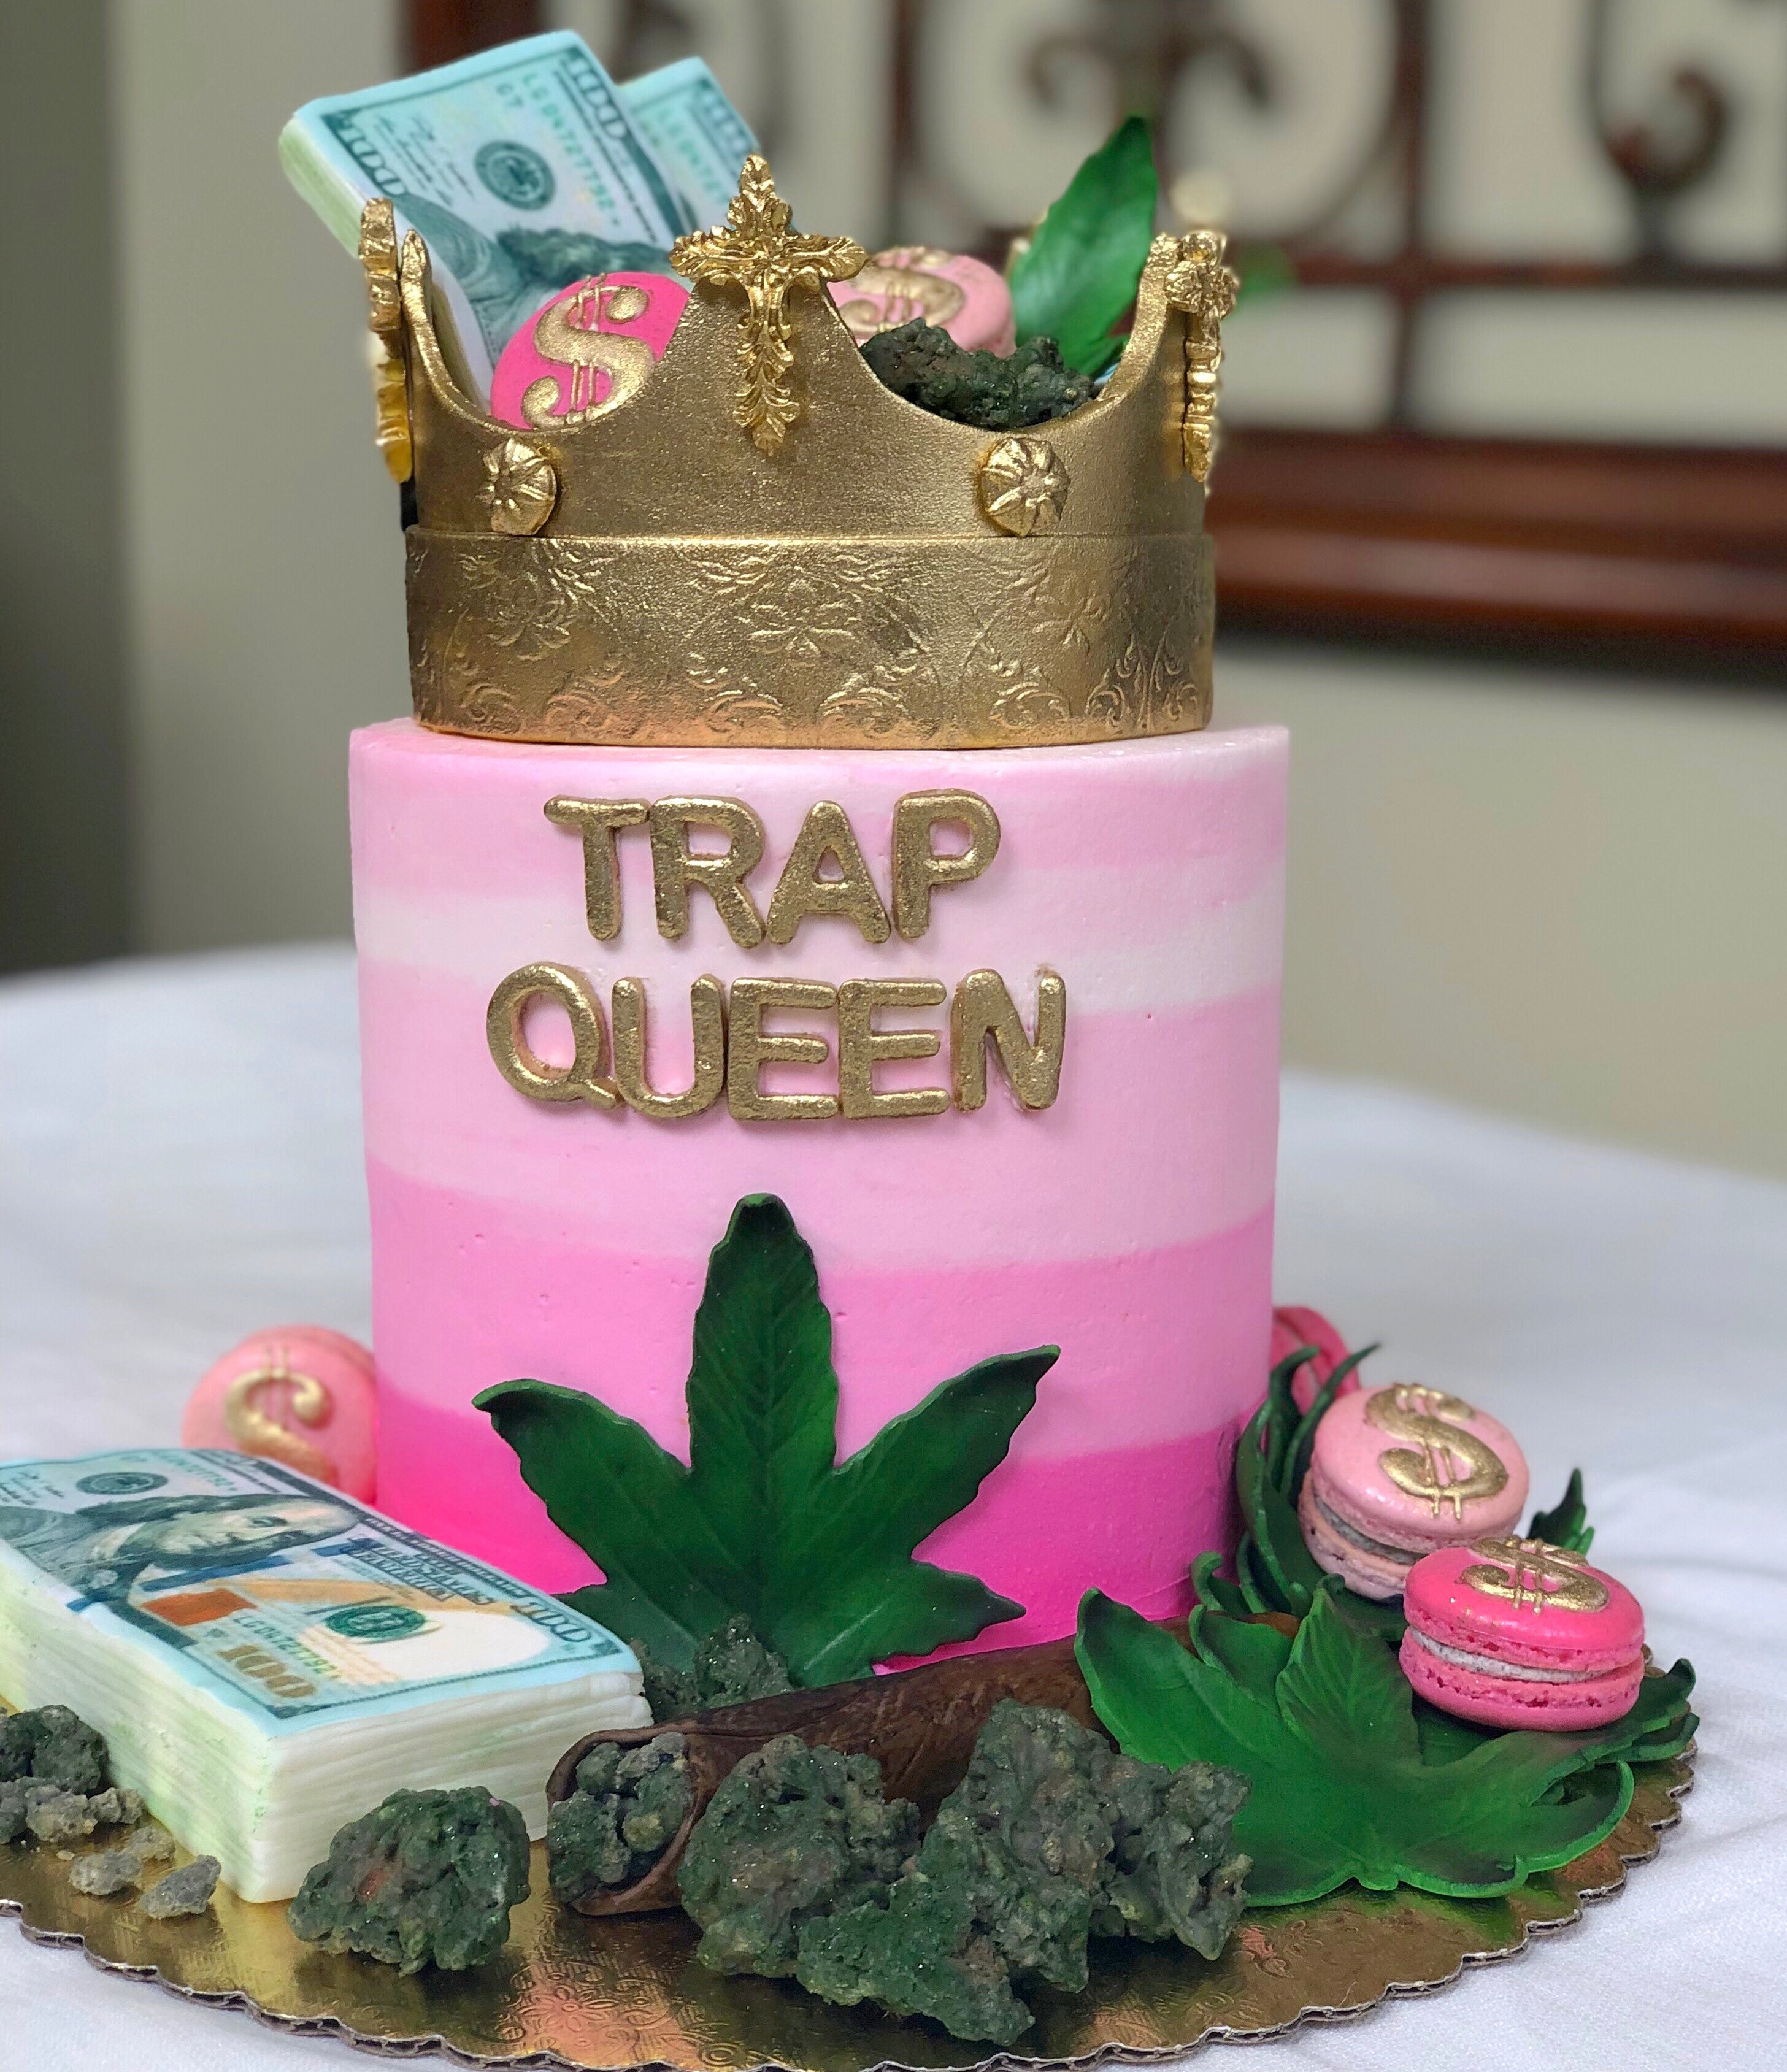 Trap Queen Cake [Explicit]